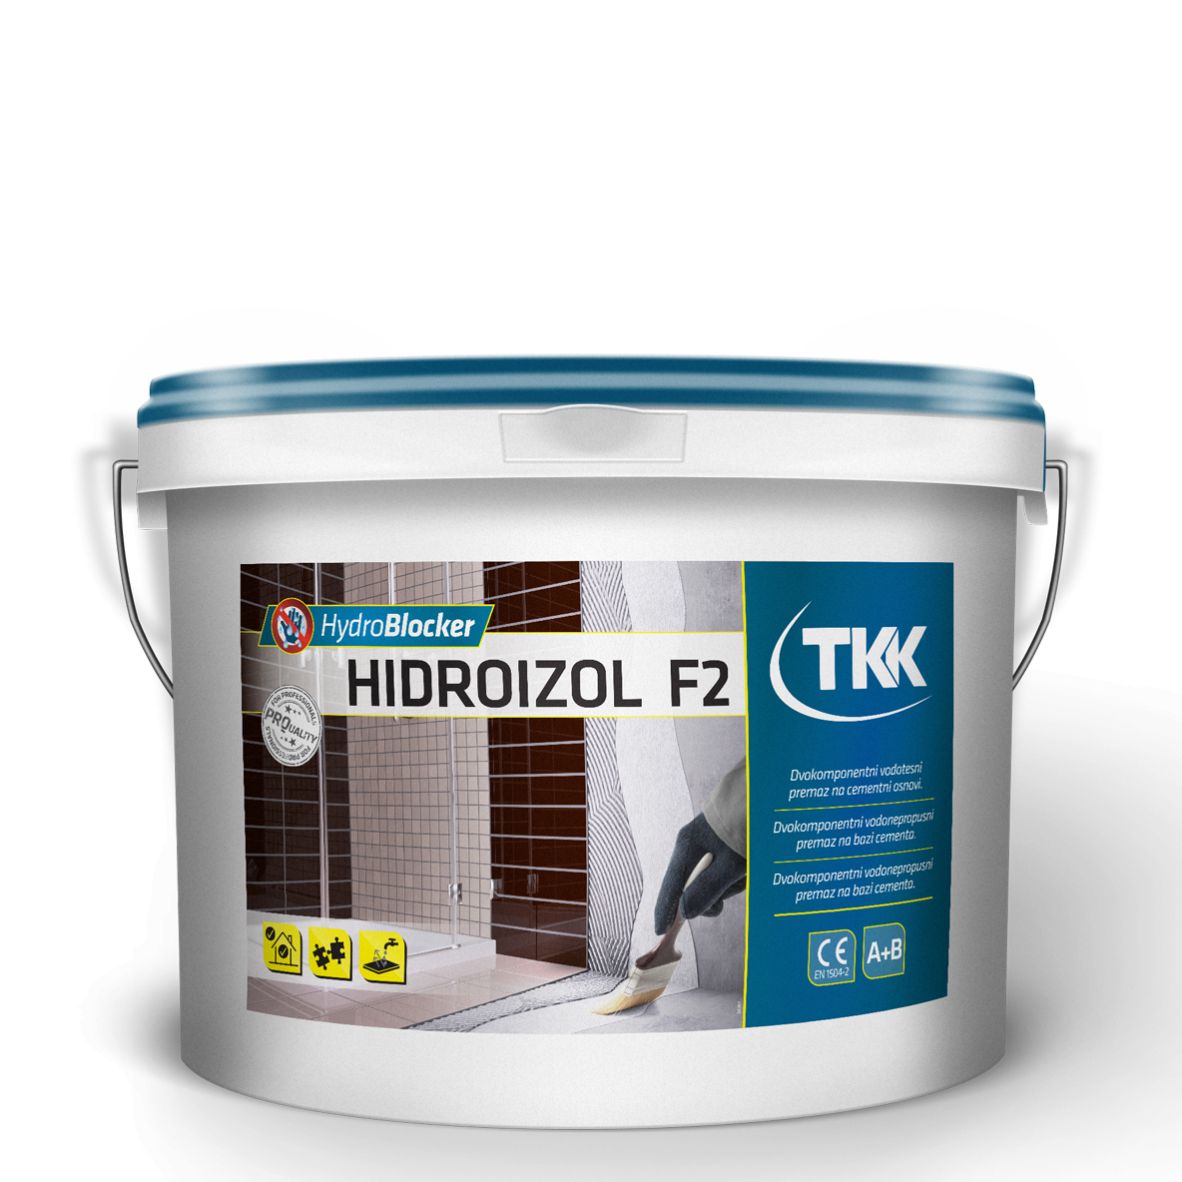 TKK Hydroblocker Hidroizol F2